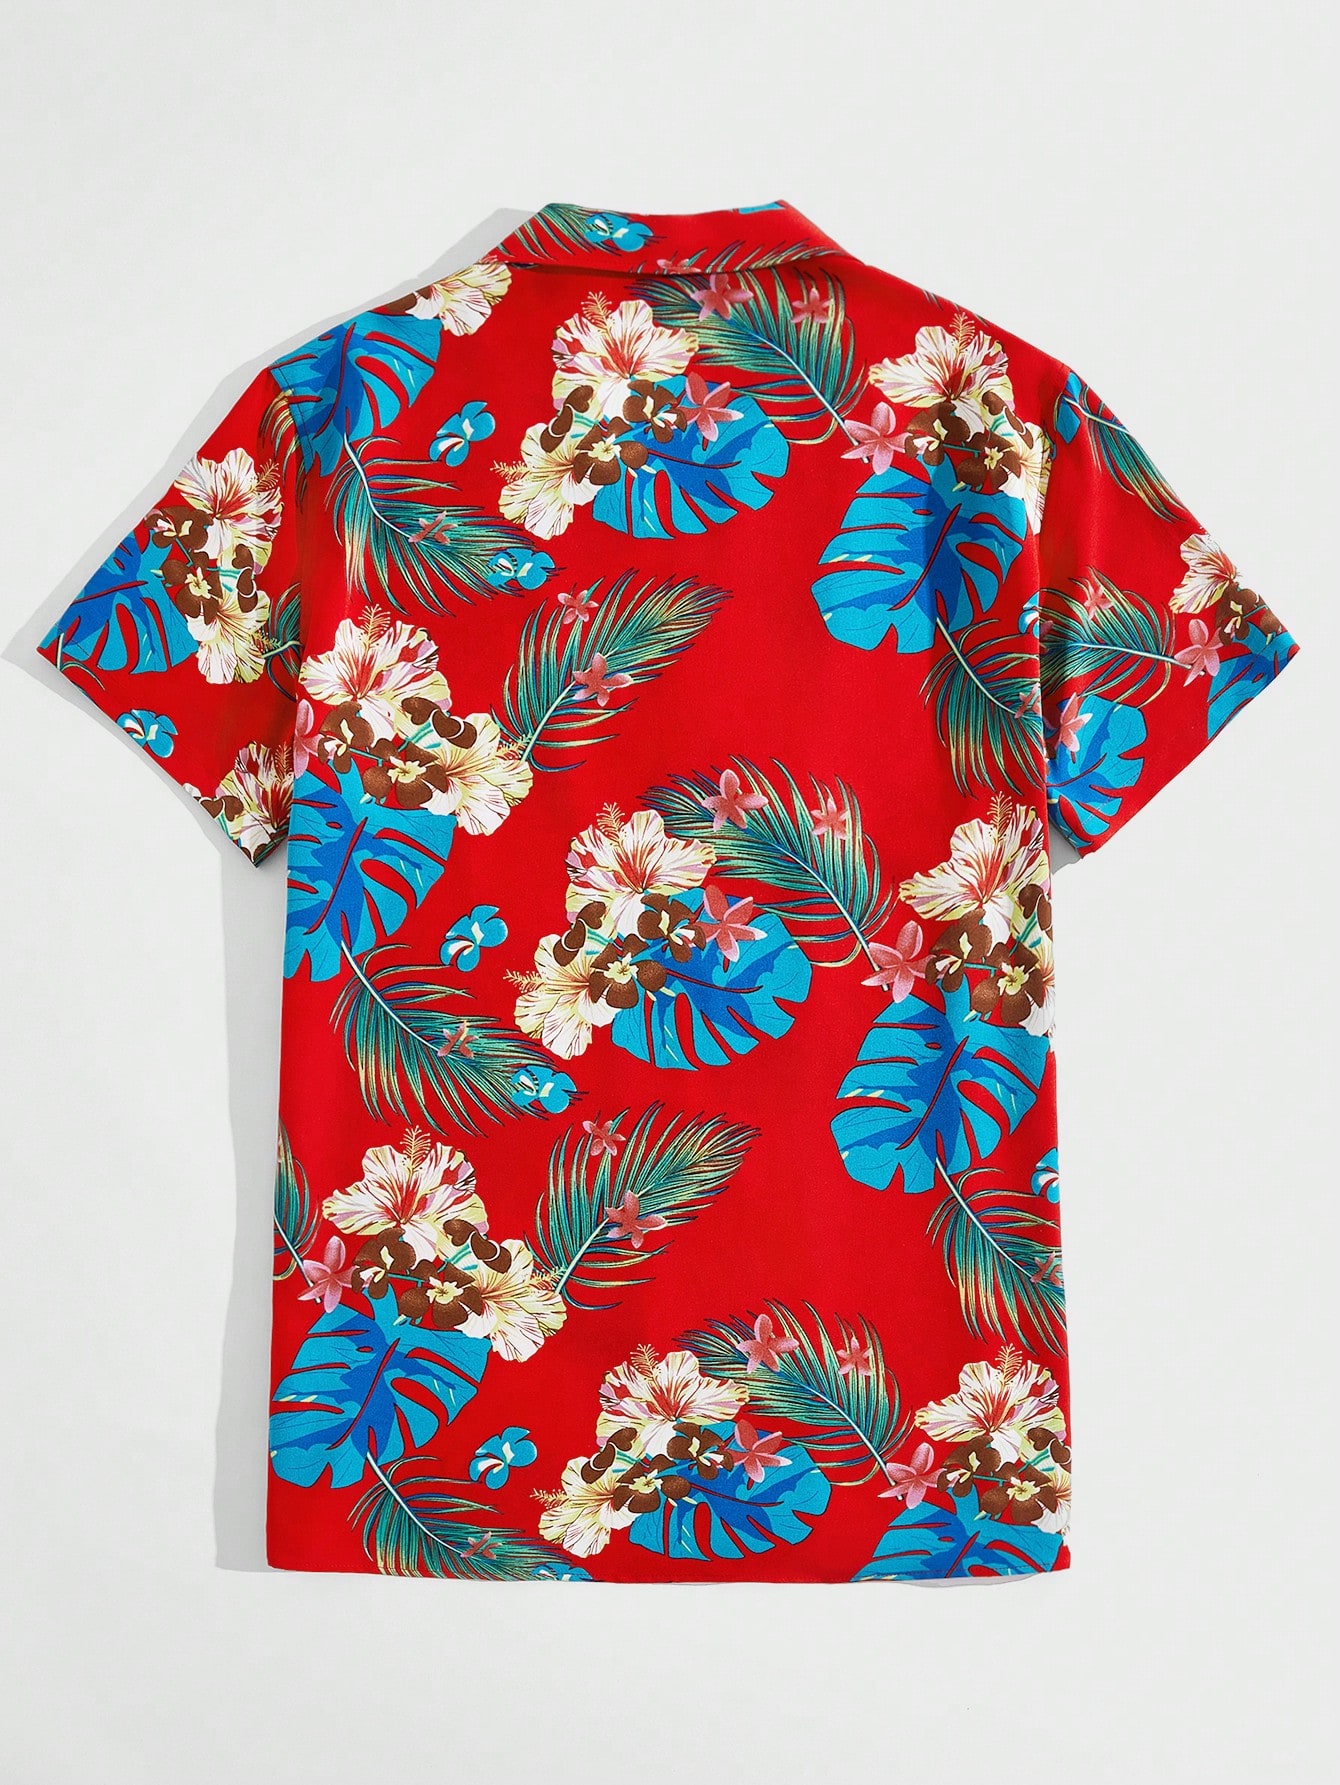 Мужская тканая рубашка с короткими рукавами и принтом тропических растений Manfinity RSRT, красный